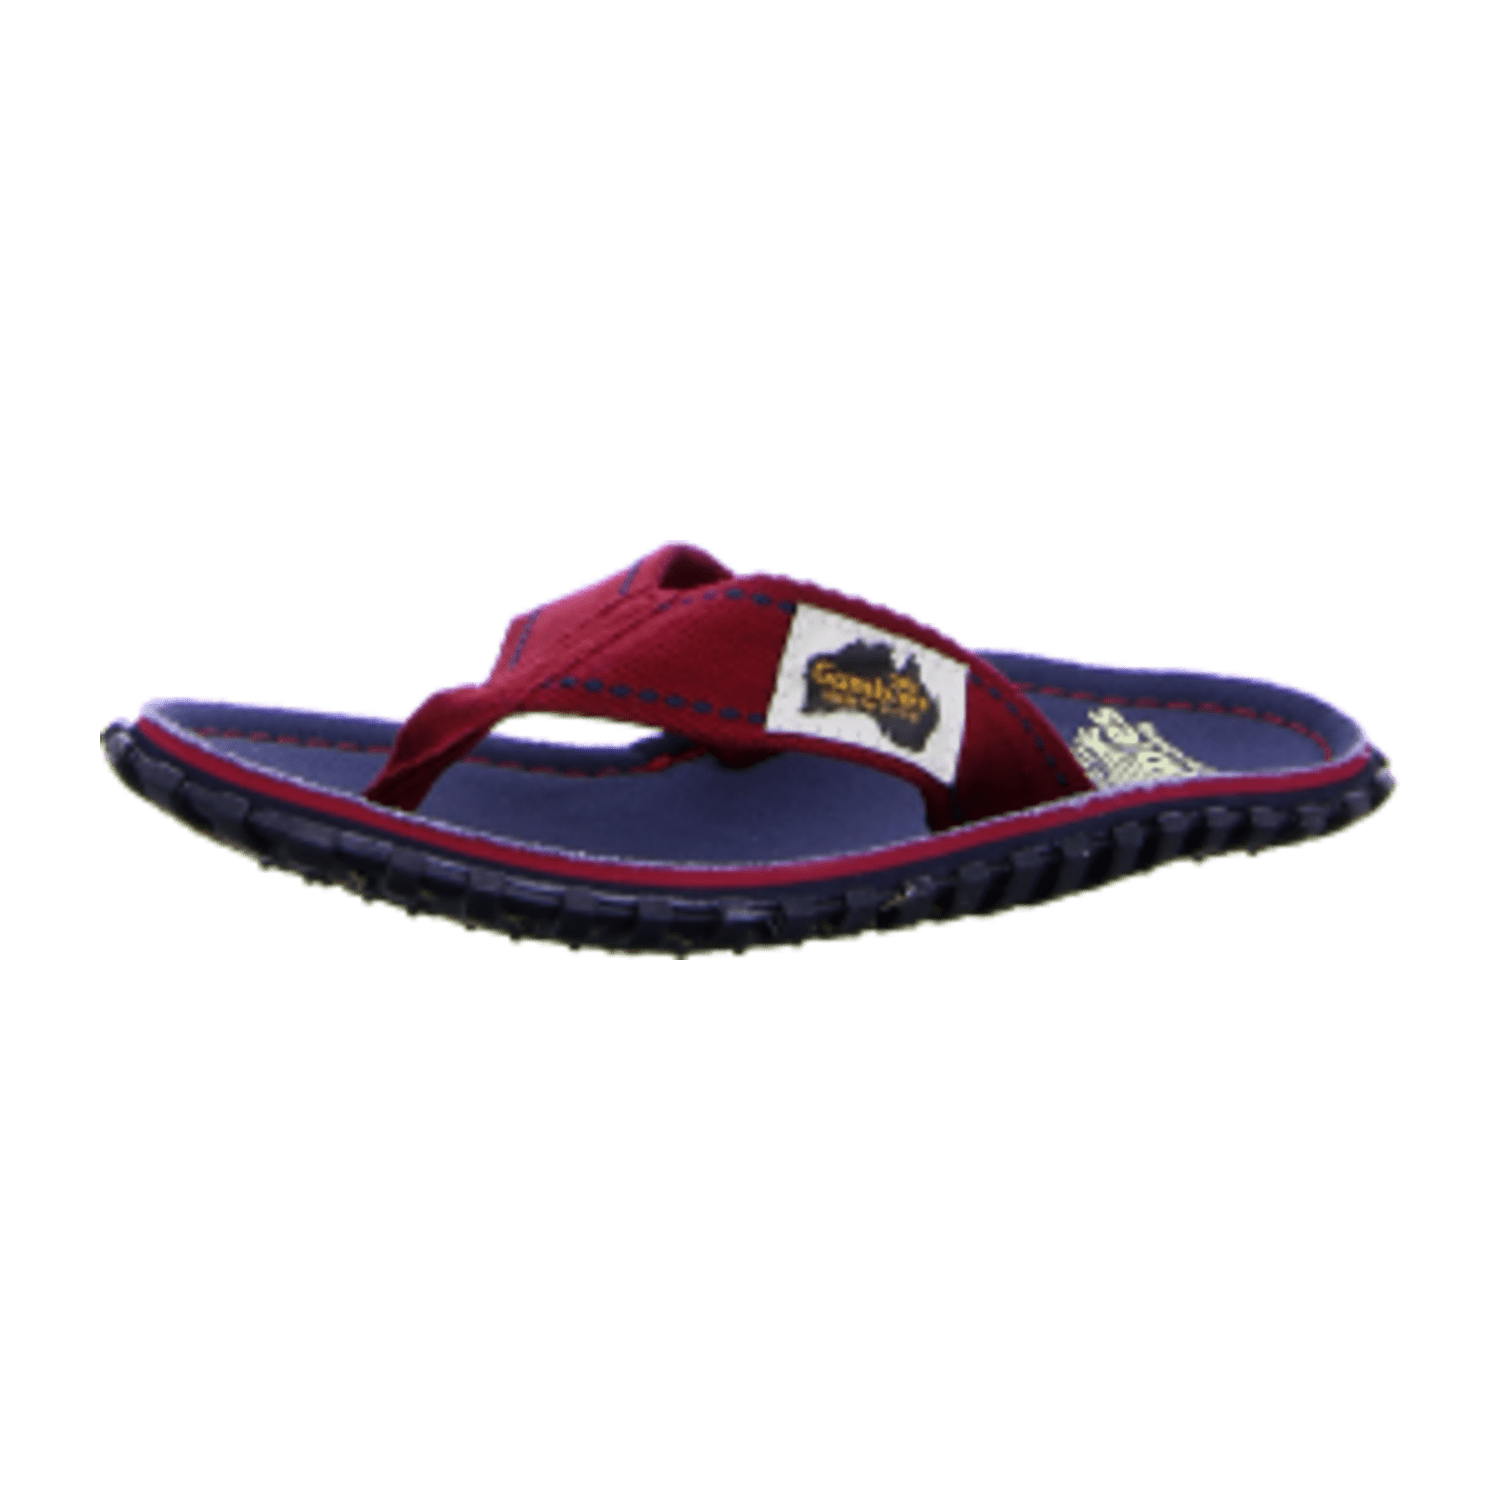 Gumbies Australian Shoes- Orig